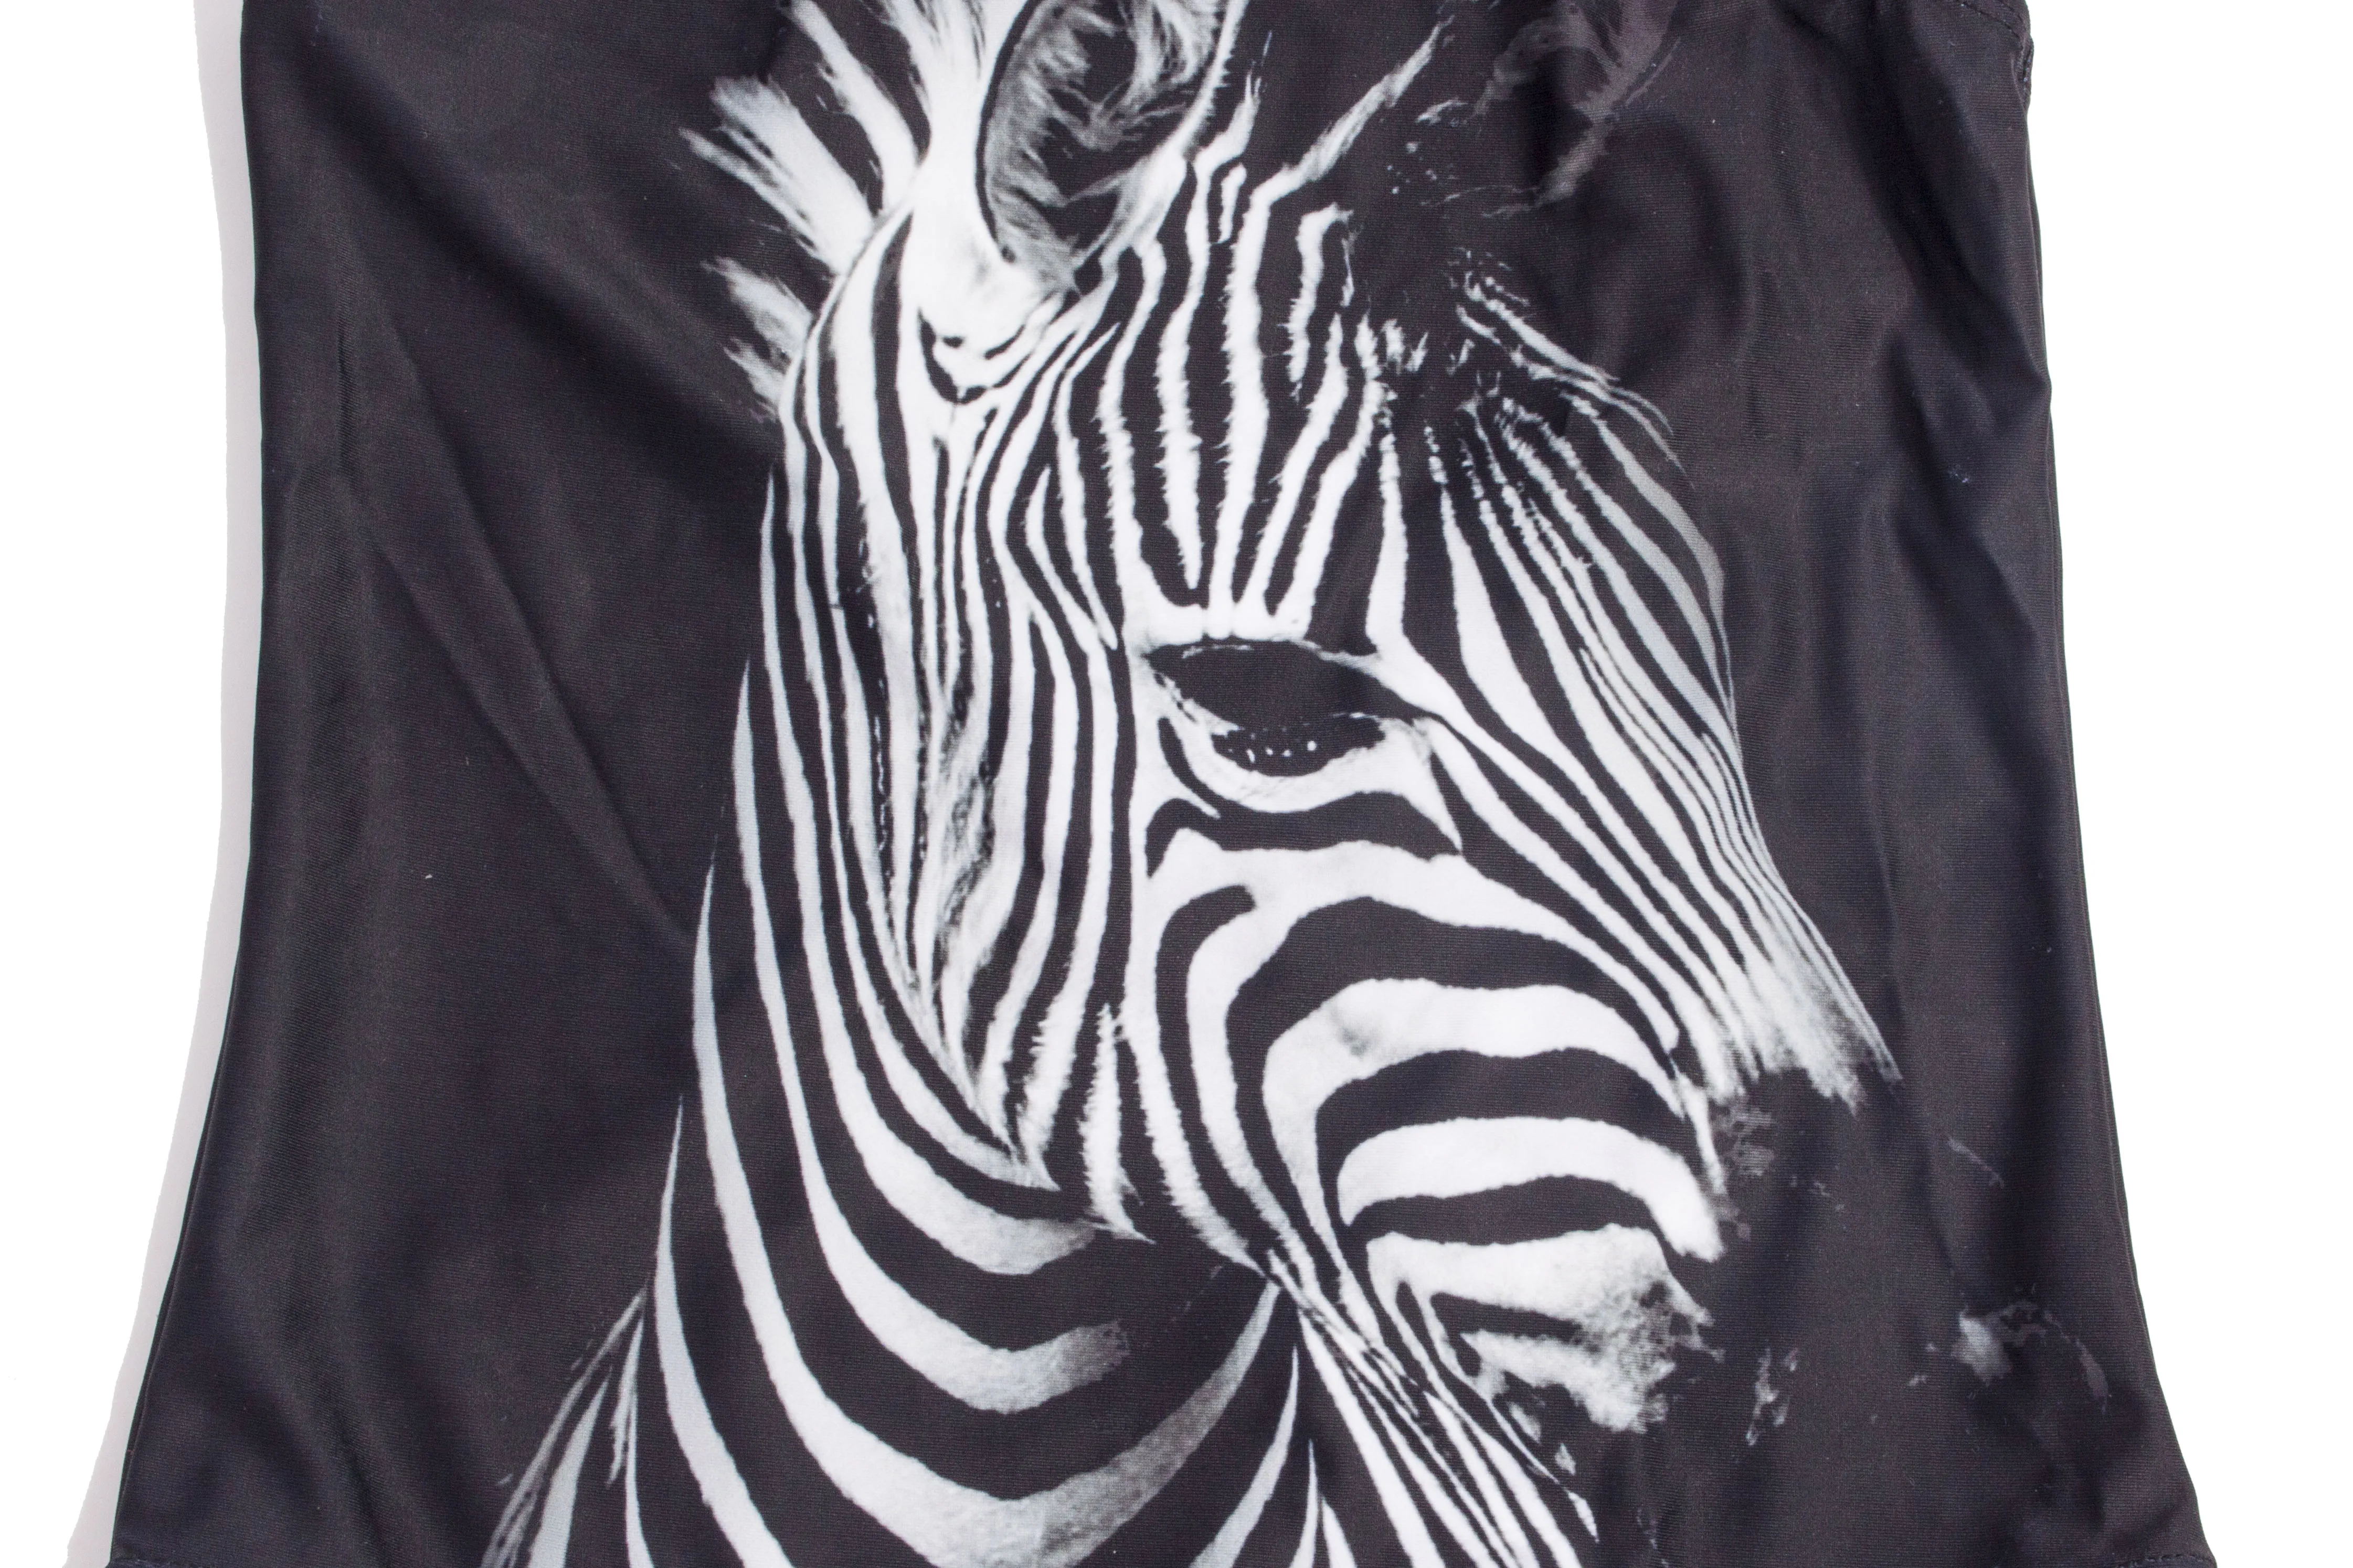 Tanio 3D Animal Zebra strój kąpielowy dla dziewczynek sklep